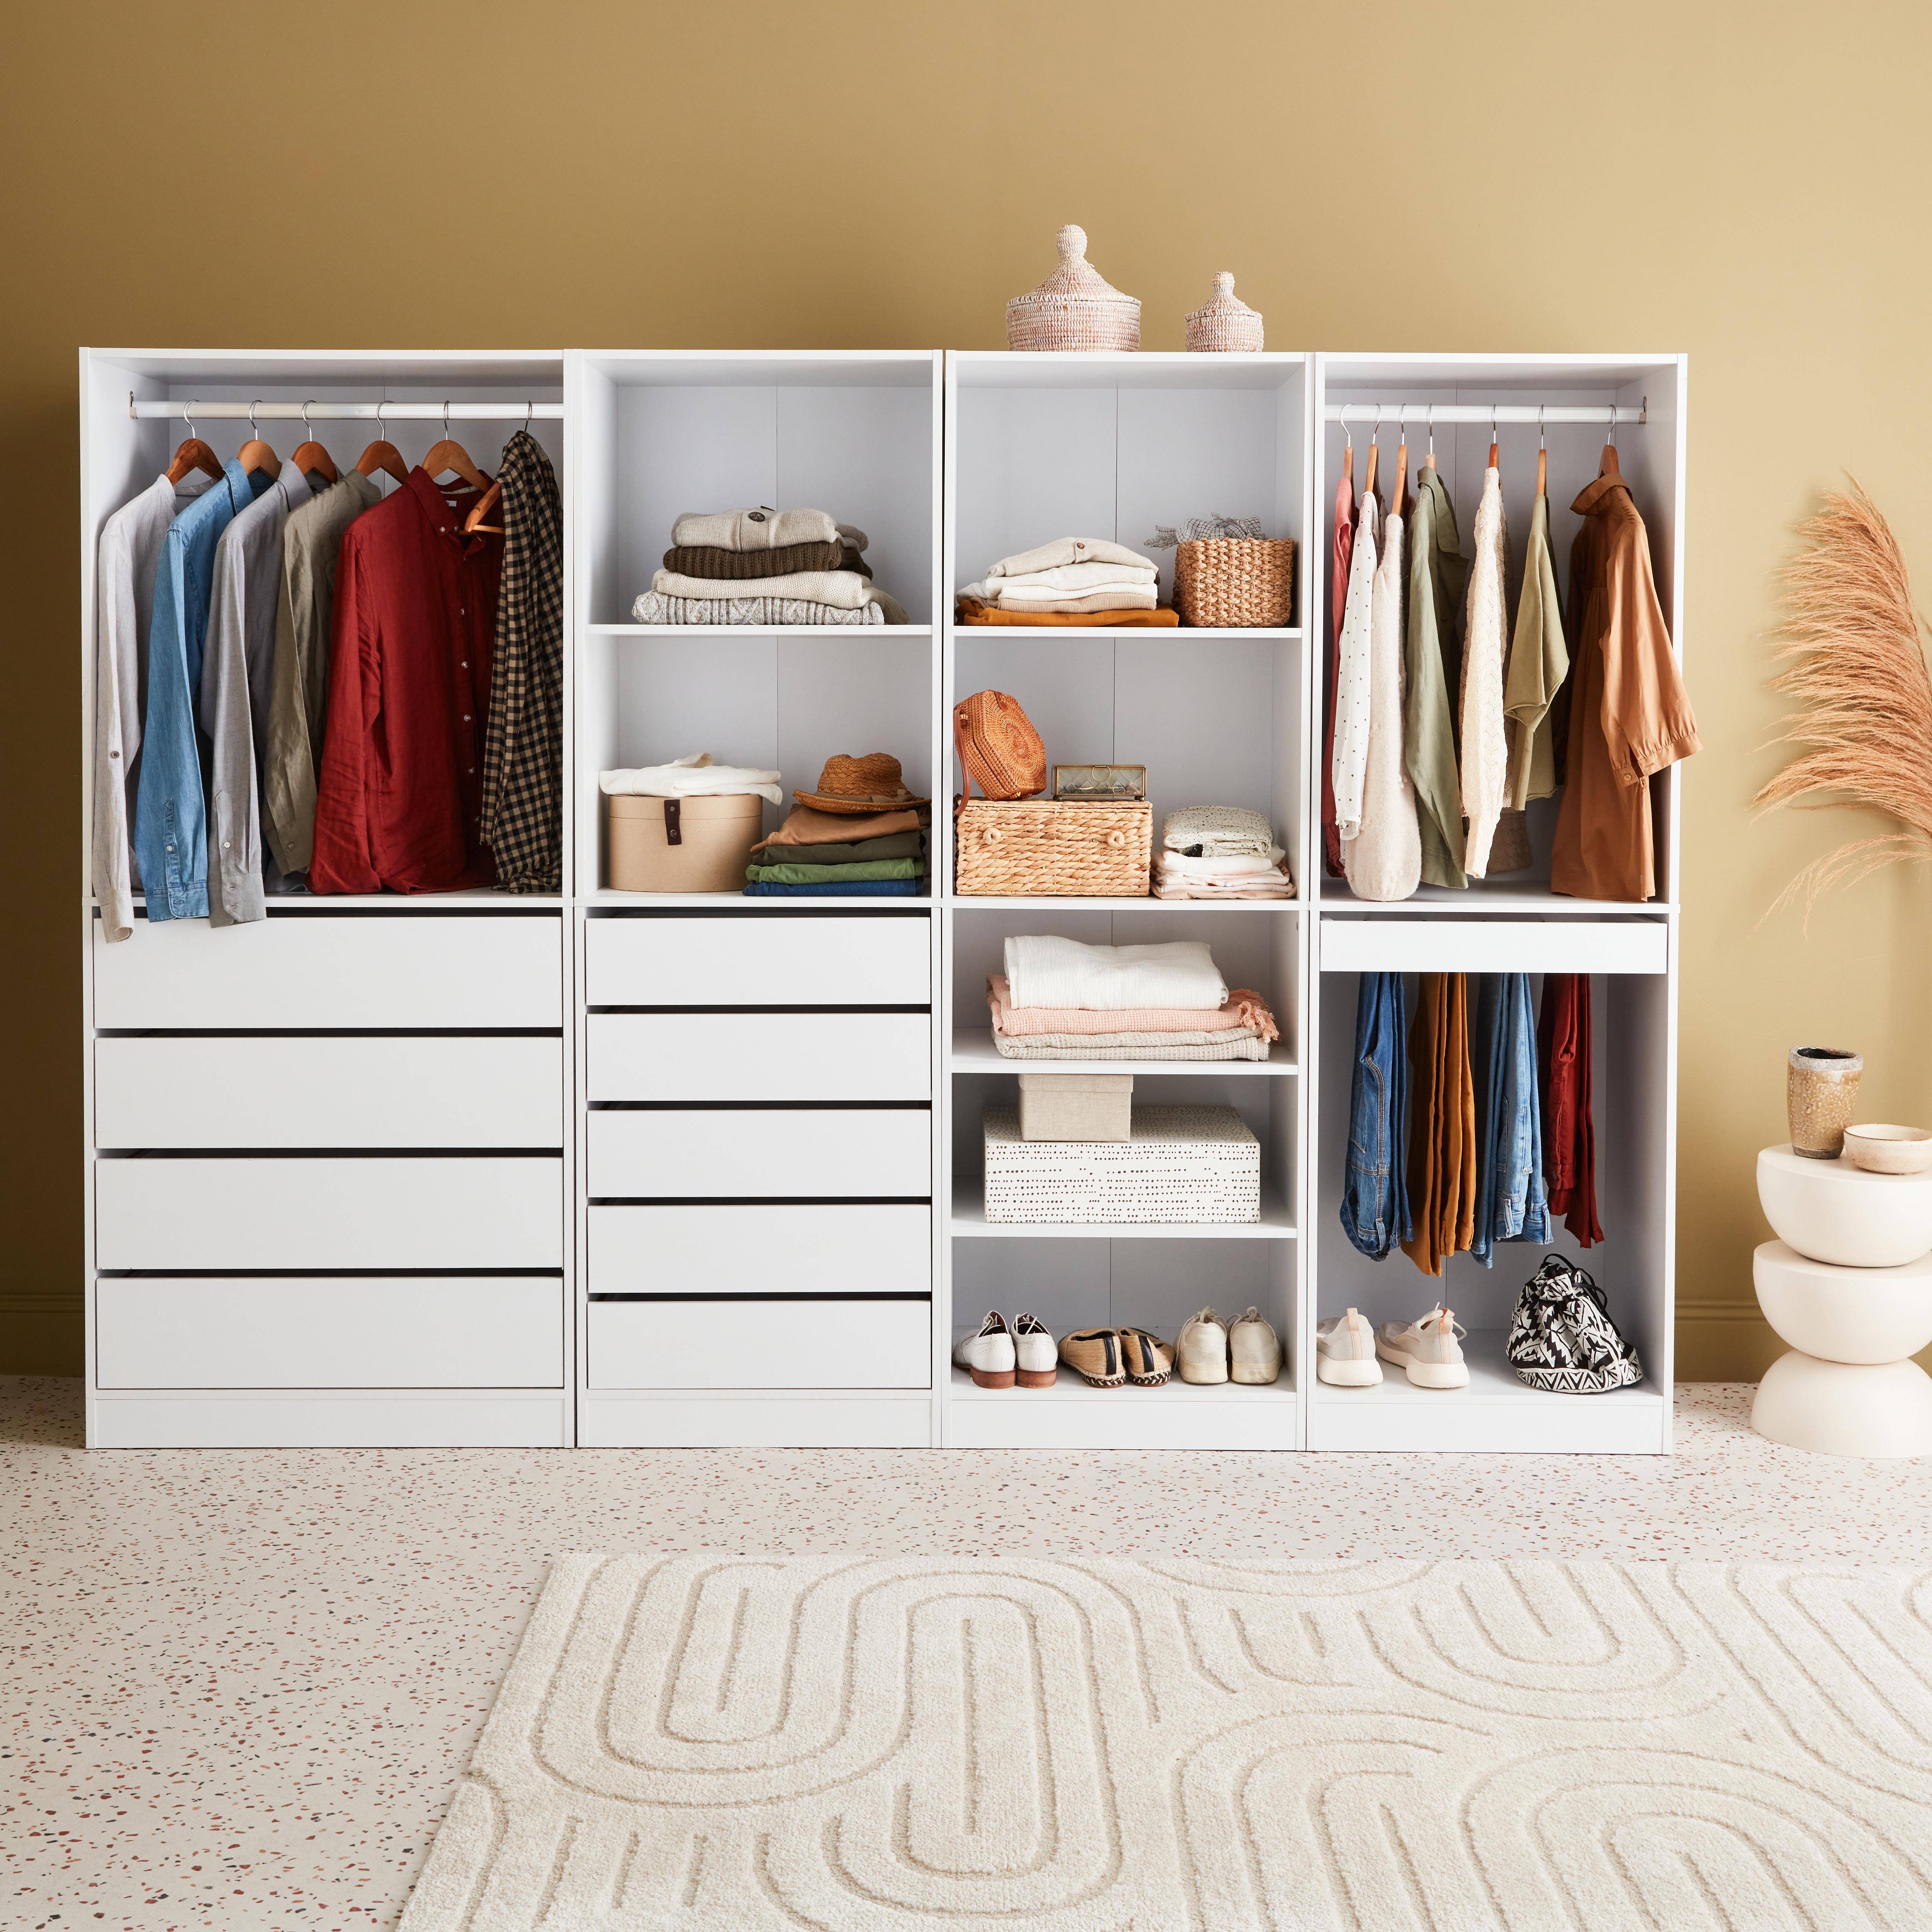 Modular wardrobe set with 4 units, white, laminate panels,sweeek,Photo1